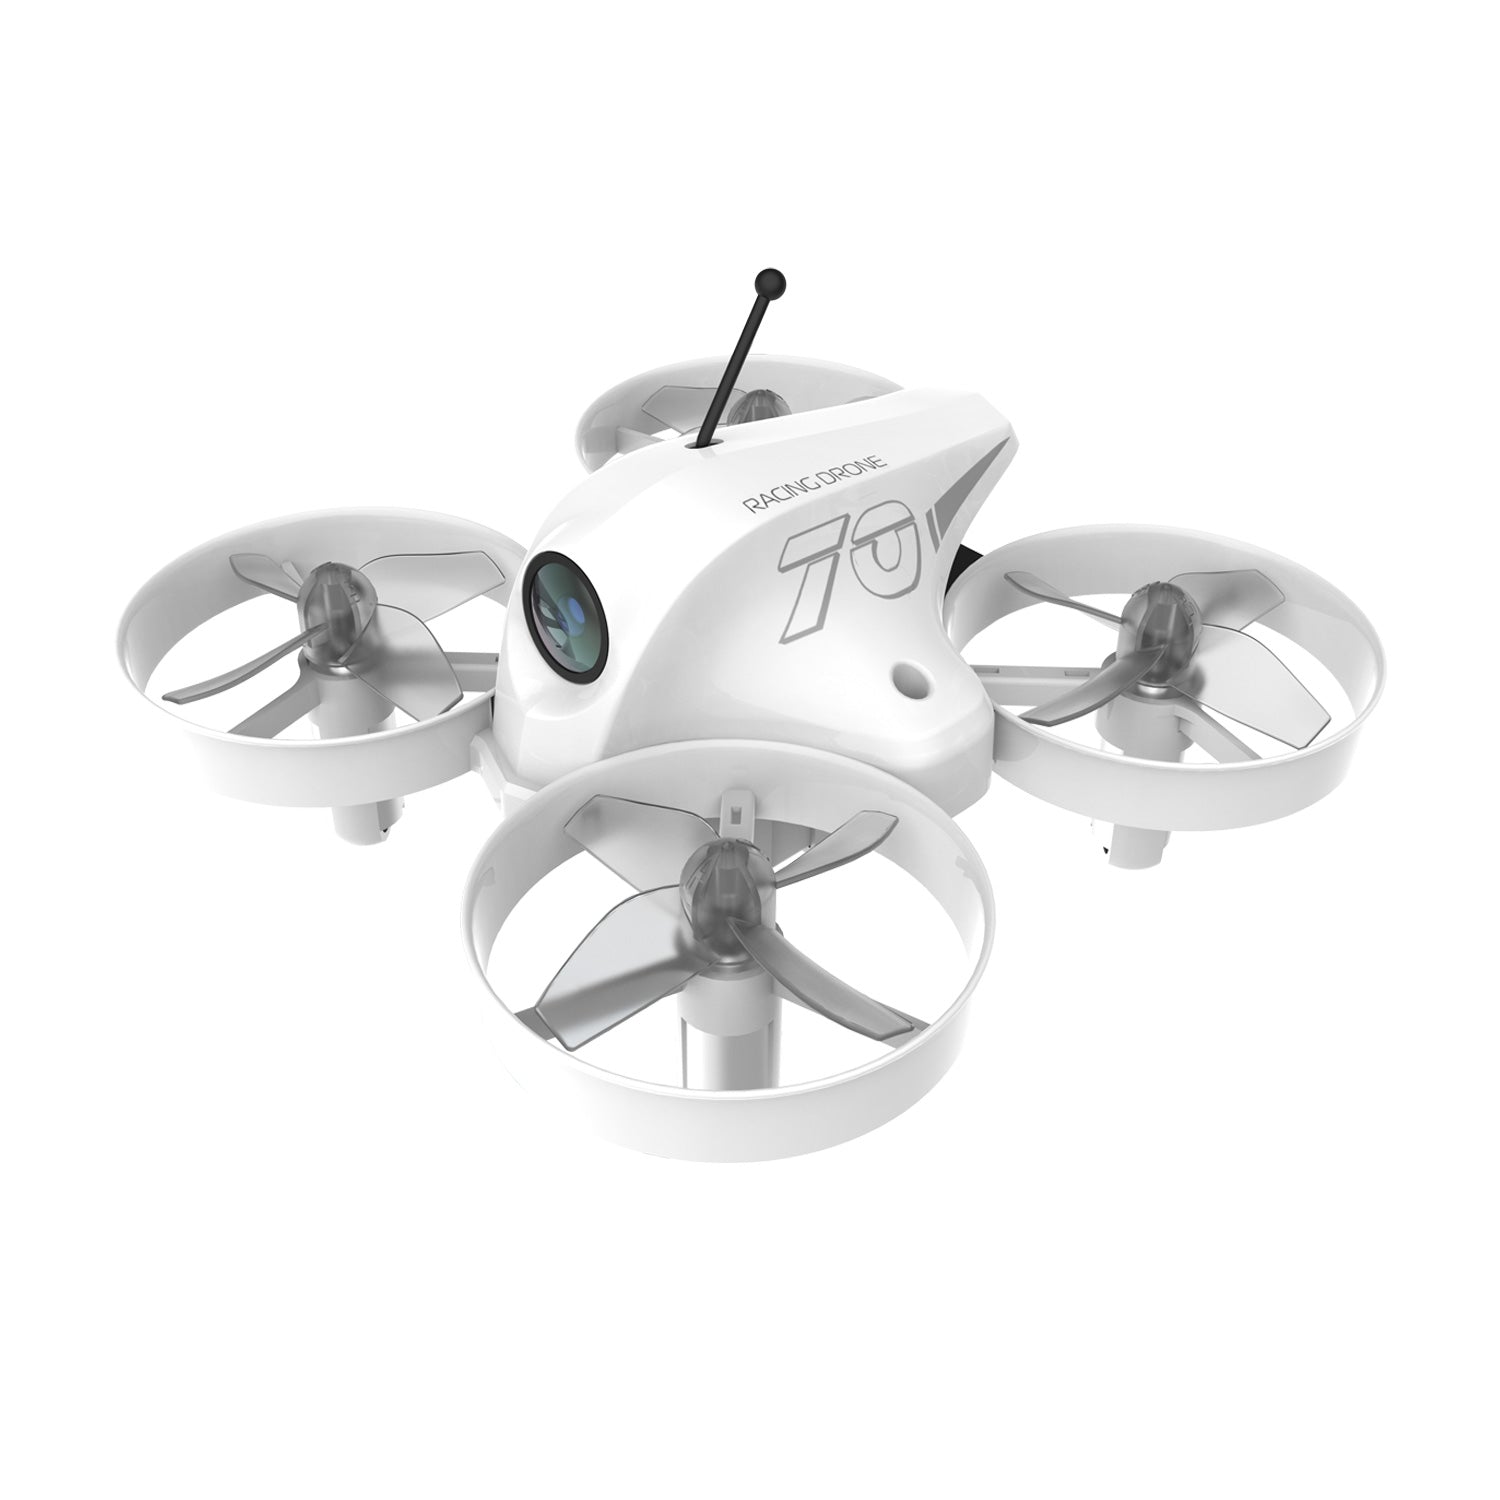 APEX VR70 FPV Drone , Single drone, No Remote – APEX Drone